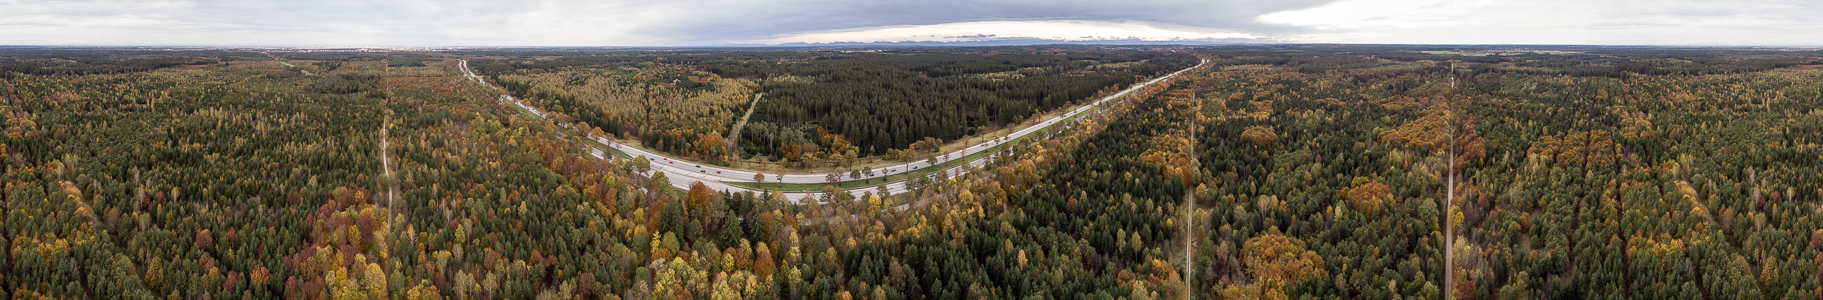 Forstenrieder Park Autobahn A 95 Luftbild aerial photo